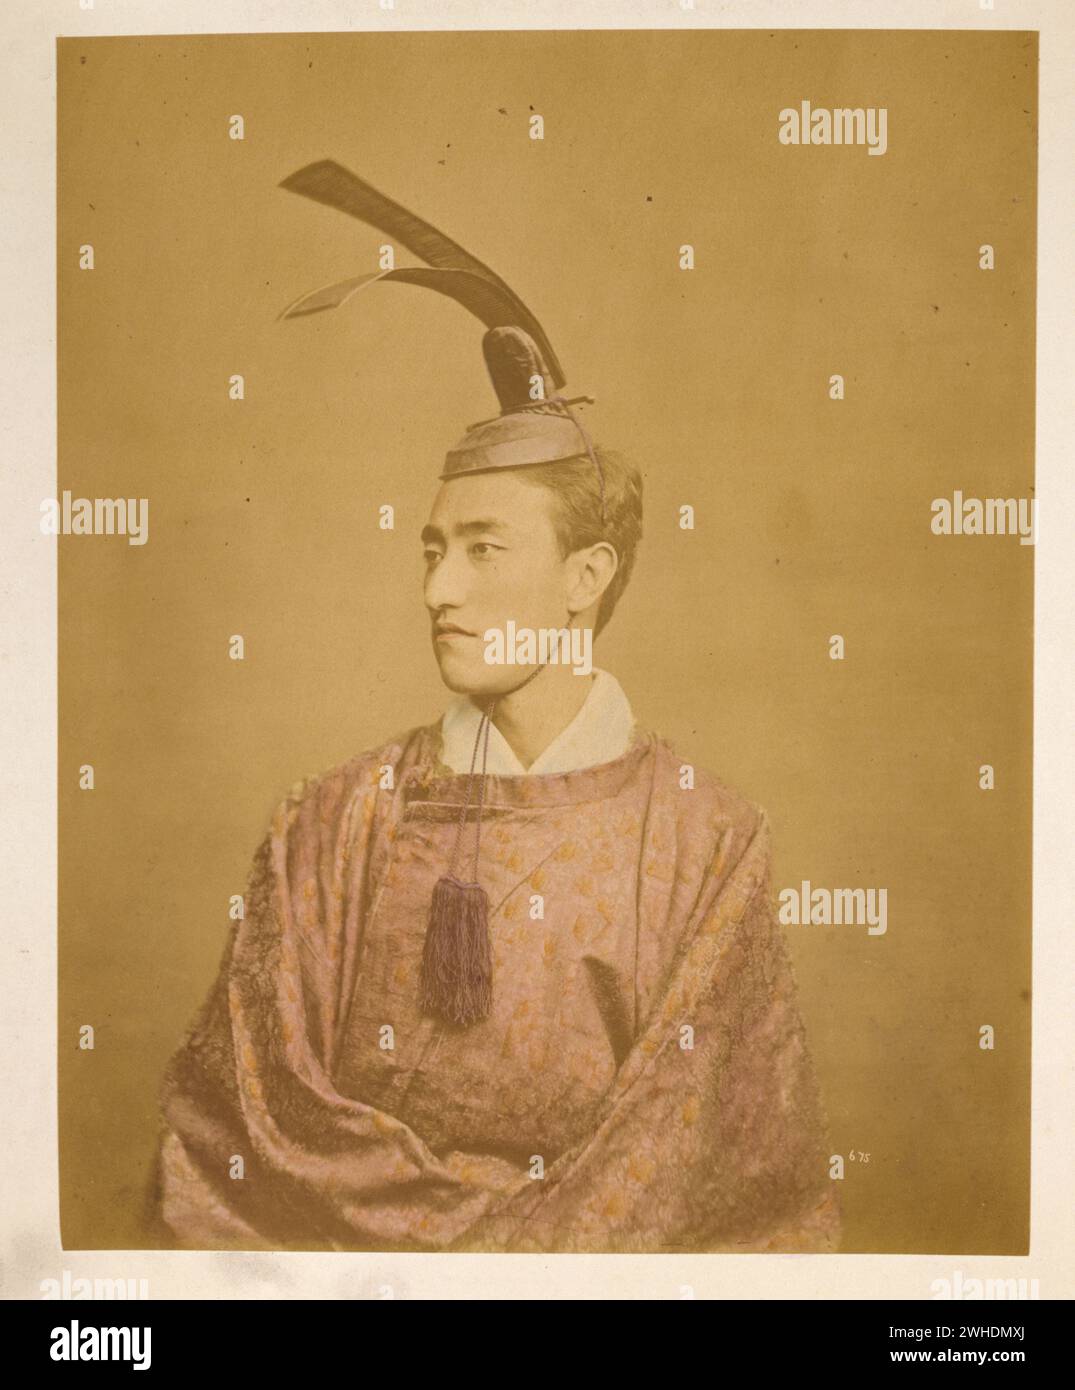 Gerichtsbeamter trägt ein Kanmuri. Das Foto zeigt ein halblanges Studio-Porträt eines Mannes, der einen Kanmuri (oder Kammuri) trägt, einen kronenähnlichen Hut, der von Adligen und/oder Hofbeamten getragen wird... Japan handkoloriert mit Aquarellfotographik Print um 1870er Jahre Stockfoto